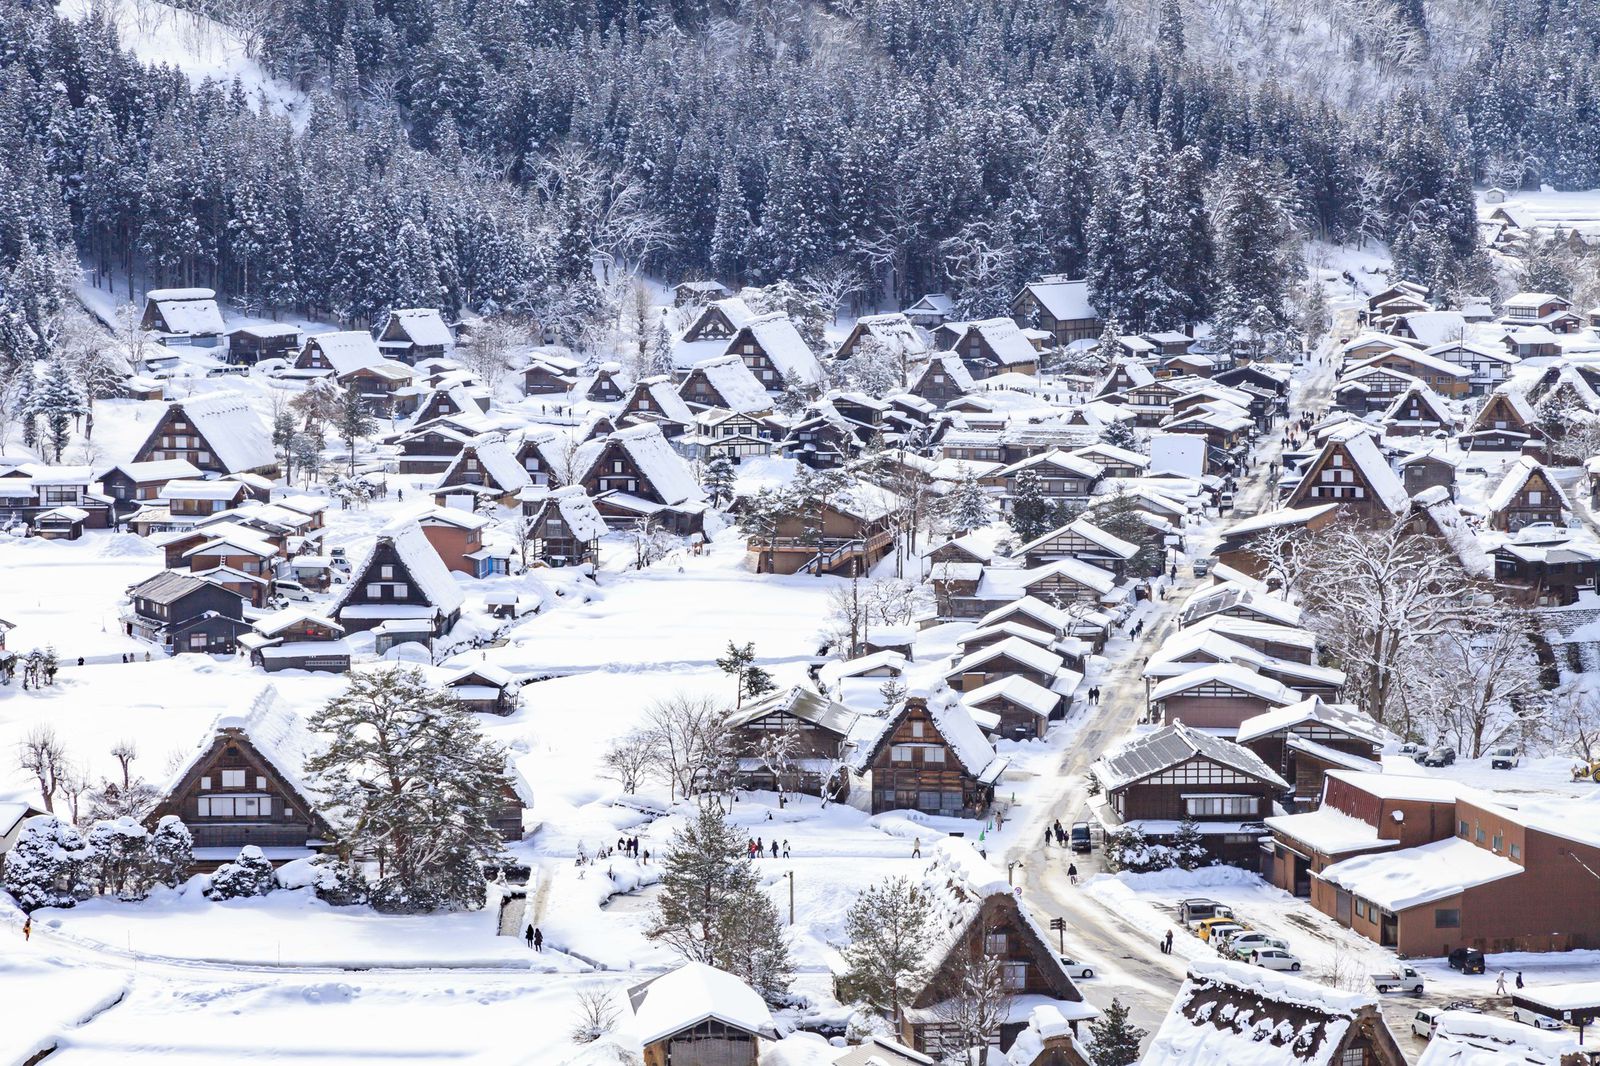 日本の美しい冬をあなたの目で 白川郷と周辺を巡るおすすめ冬旅1dayプラン Retrip リトリップ